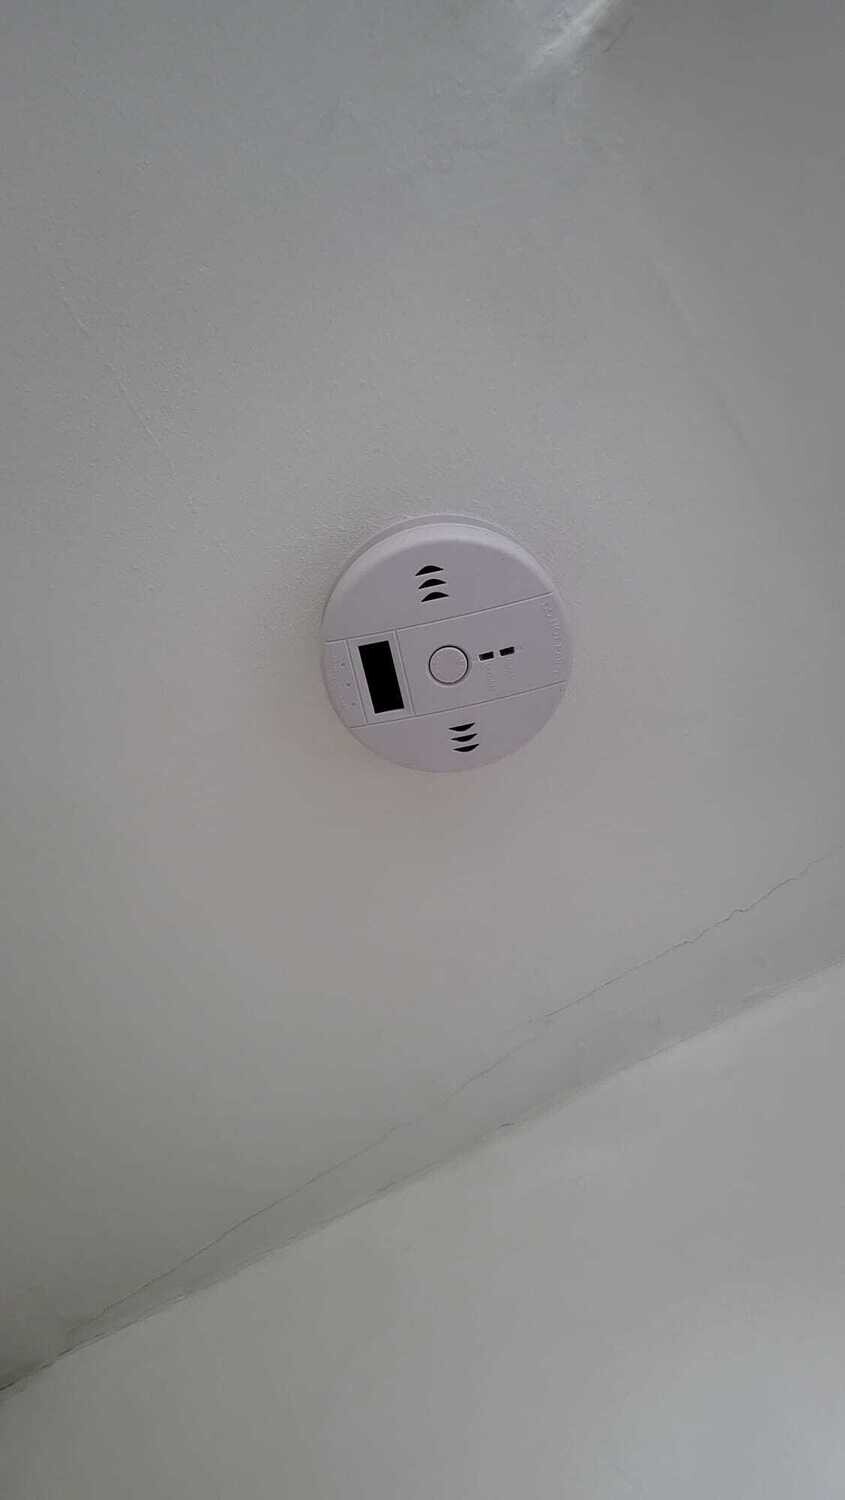 Carbon Monoxide Alarm fitted